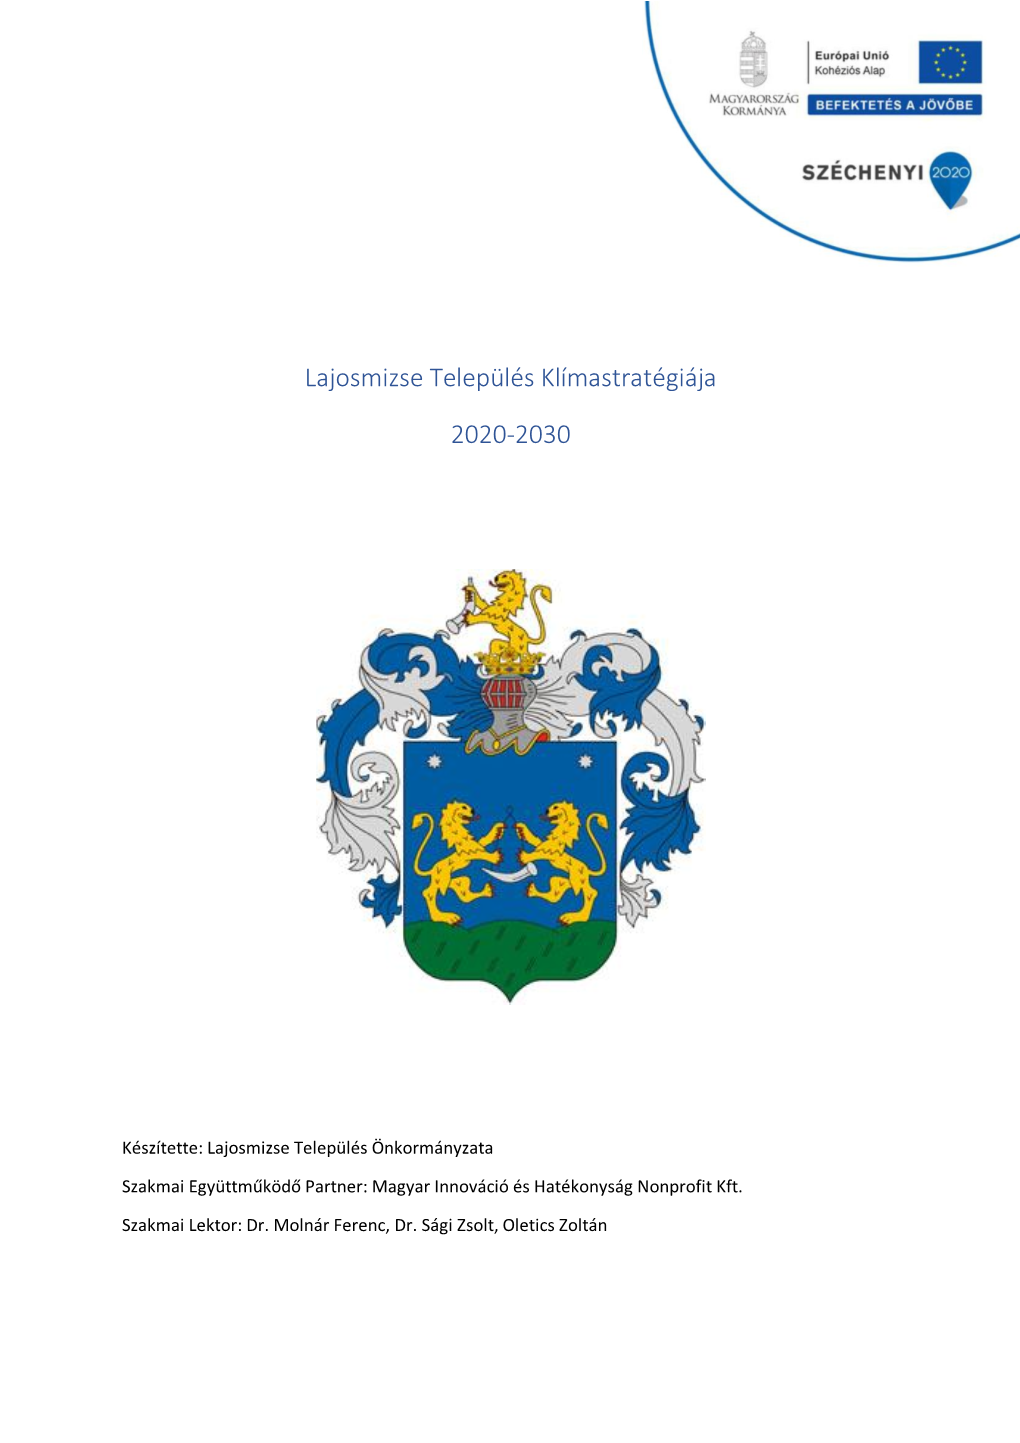 Lajosmizse Település Klímastratégiája 2020-2030